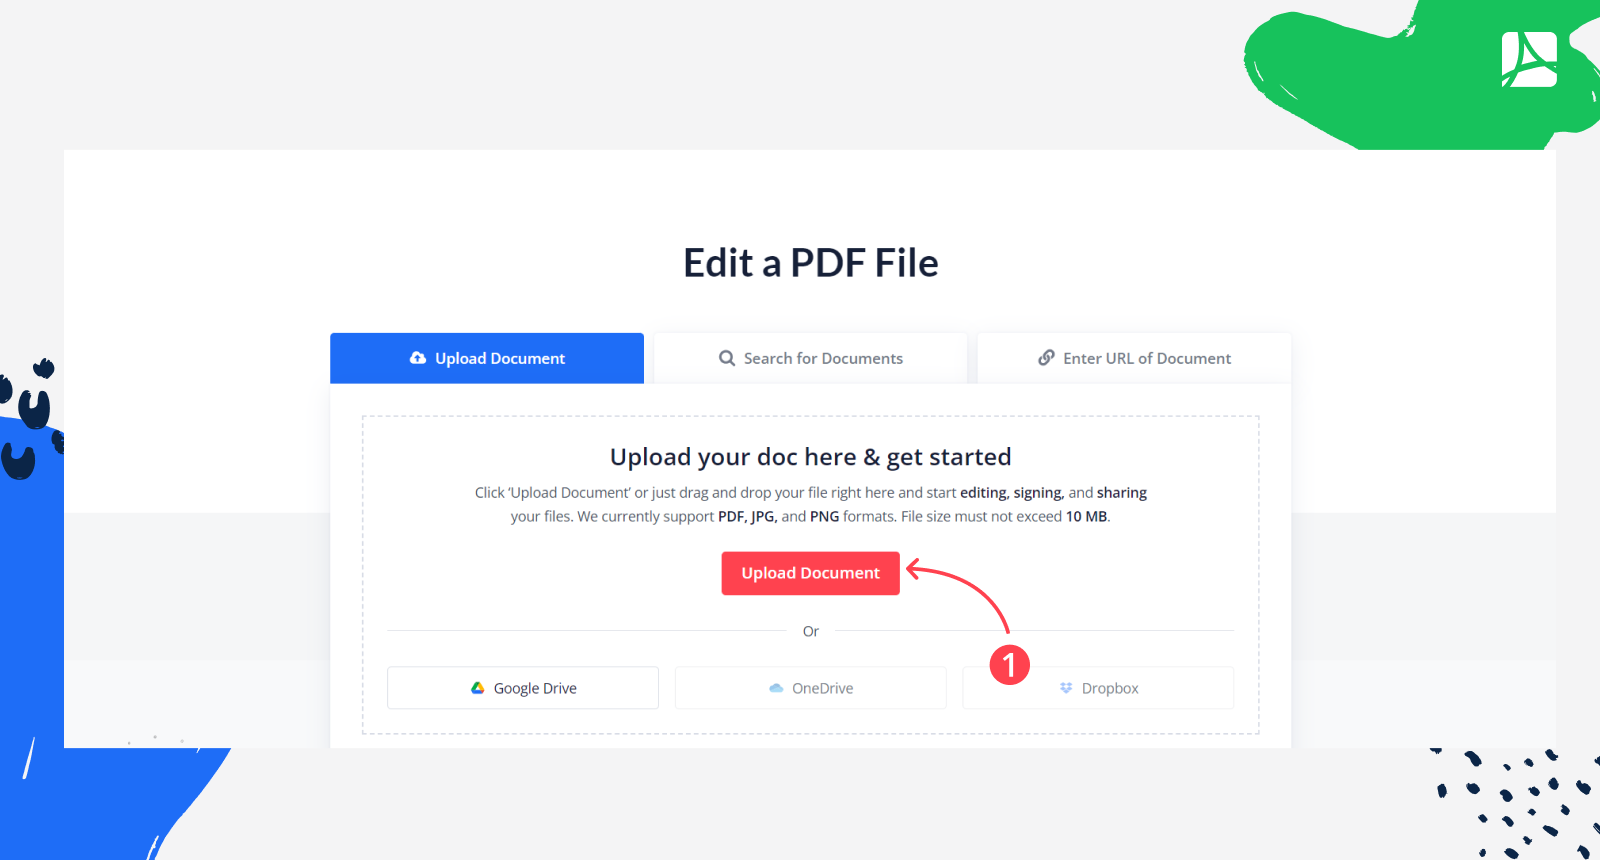 Upload a Document on PDFliner